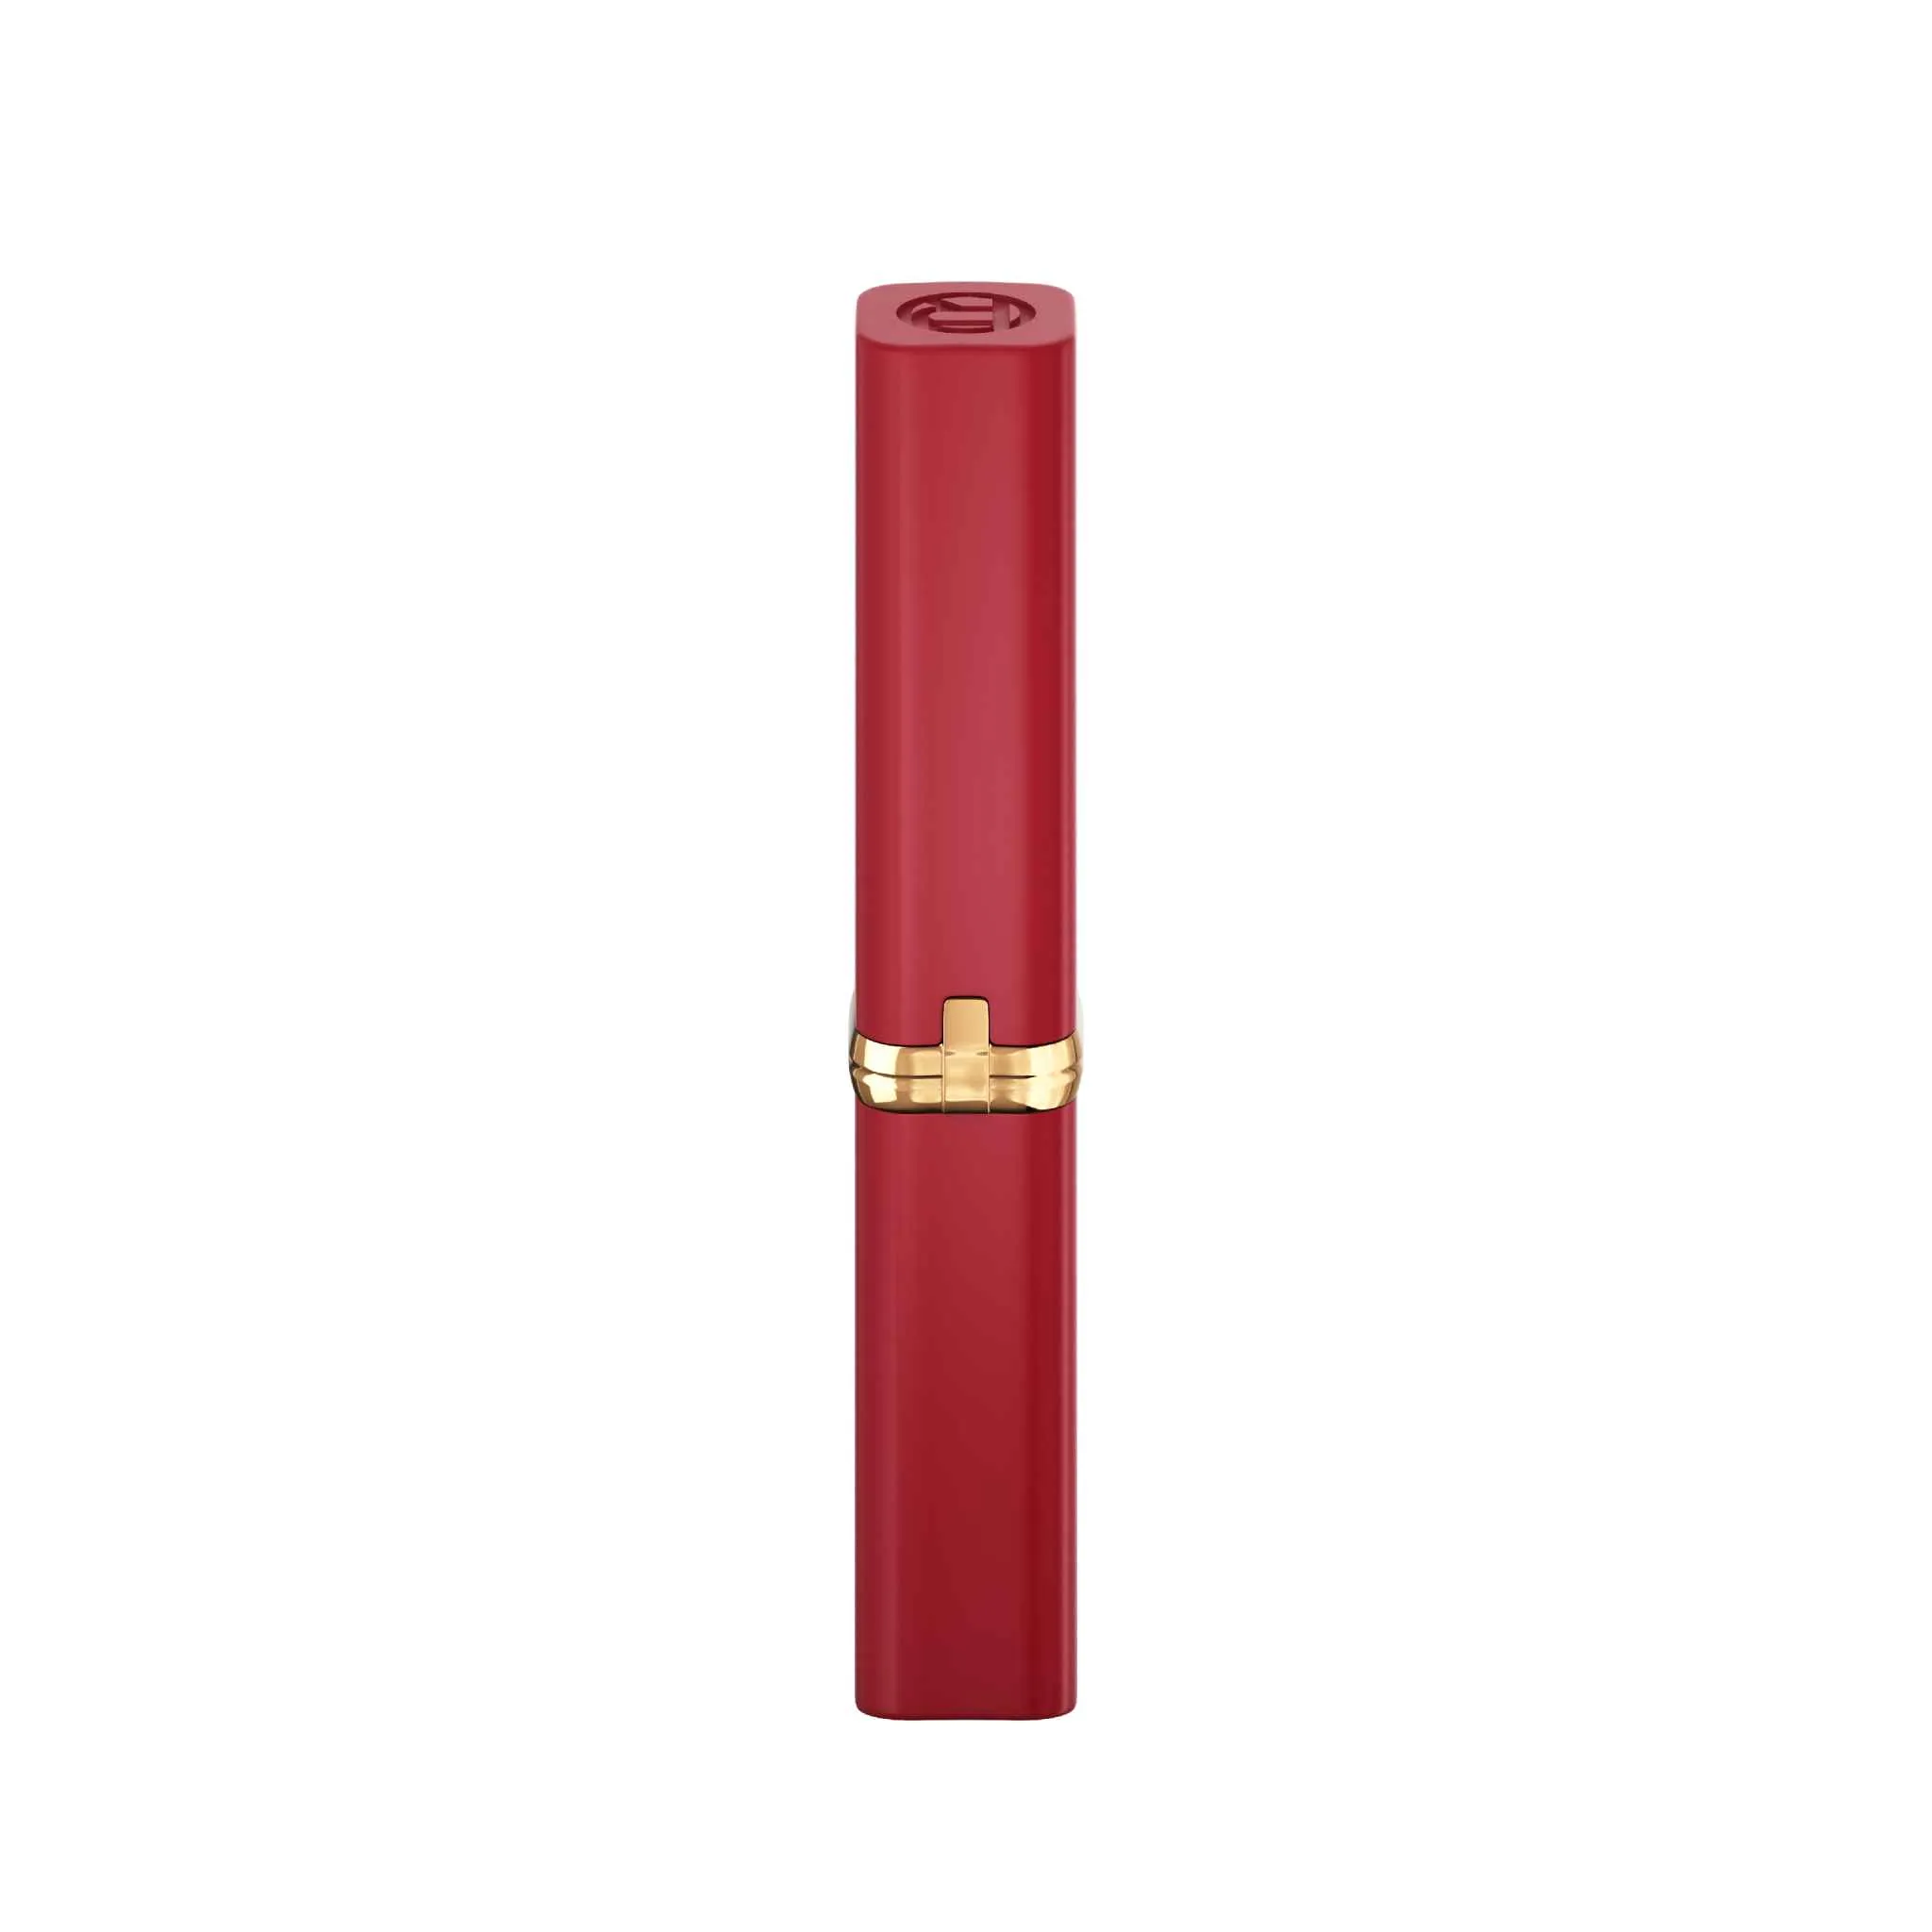 L´Oréal Paris Color Riche Intense Volume Matte Colors of Worth 300 Le Rouge Confident rúž, 1,8 g 1×1,8 g, rúž